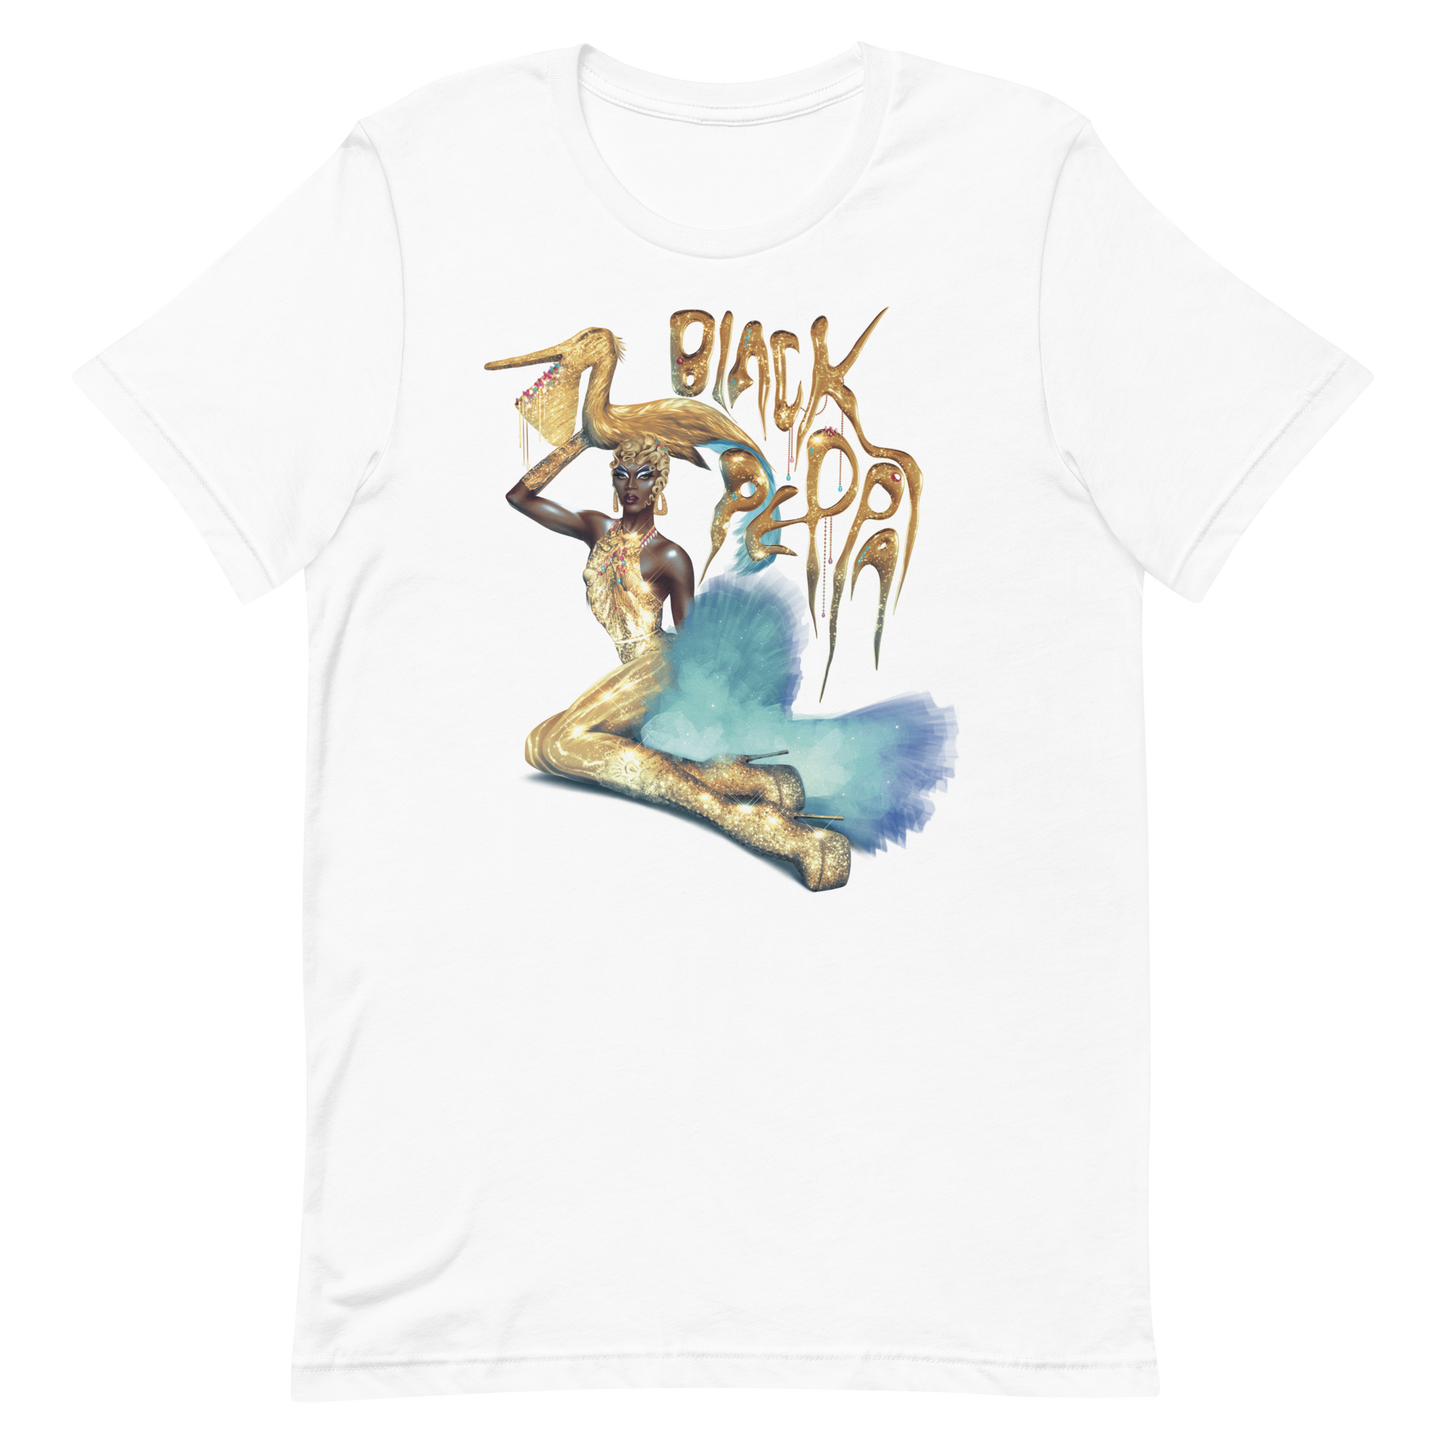 Black Peppa Meet The Queens T-shirt